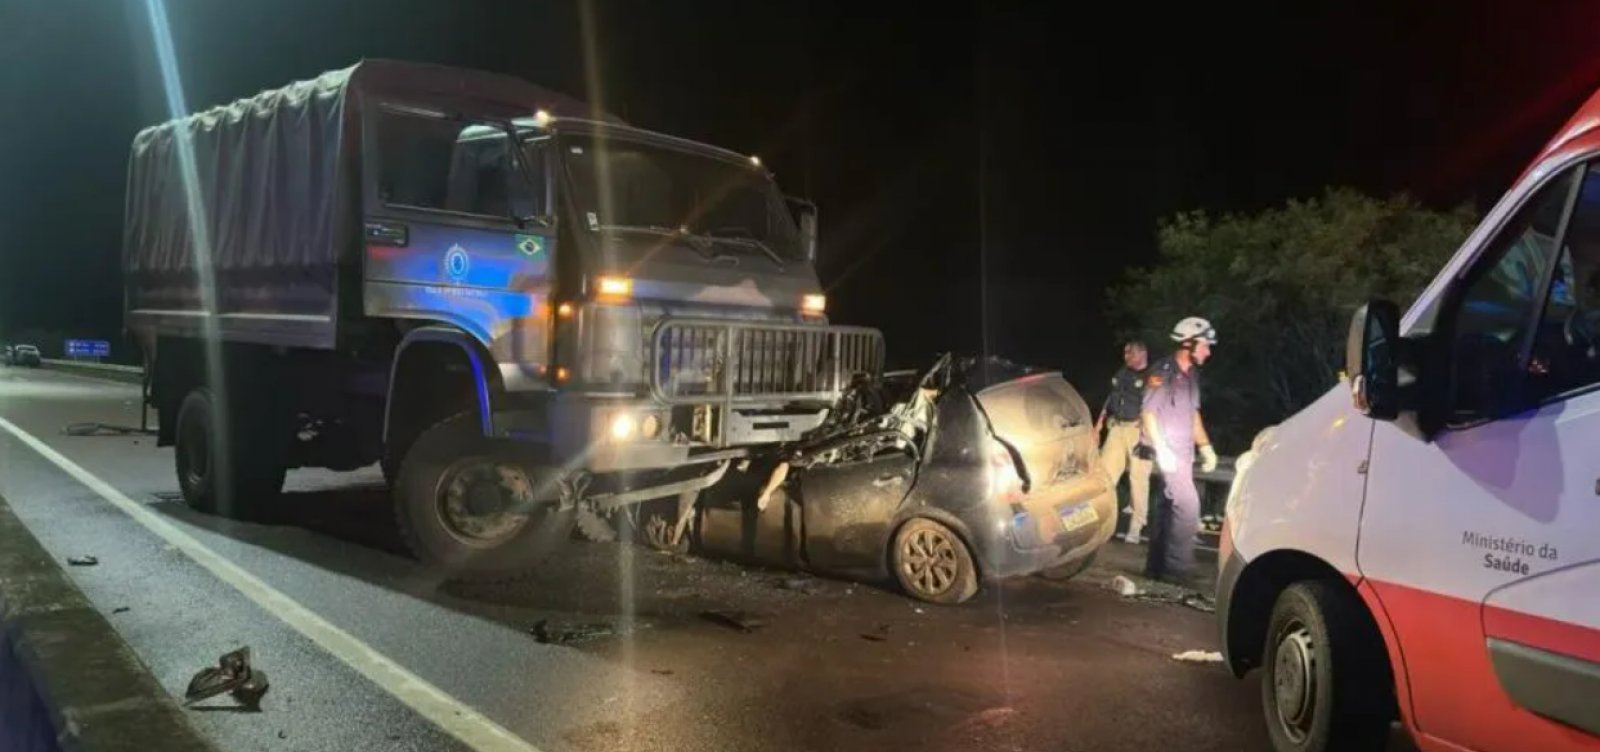  Acidente envolvendo carro do Exército no RS deixa três pessoas mortas